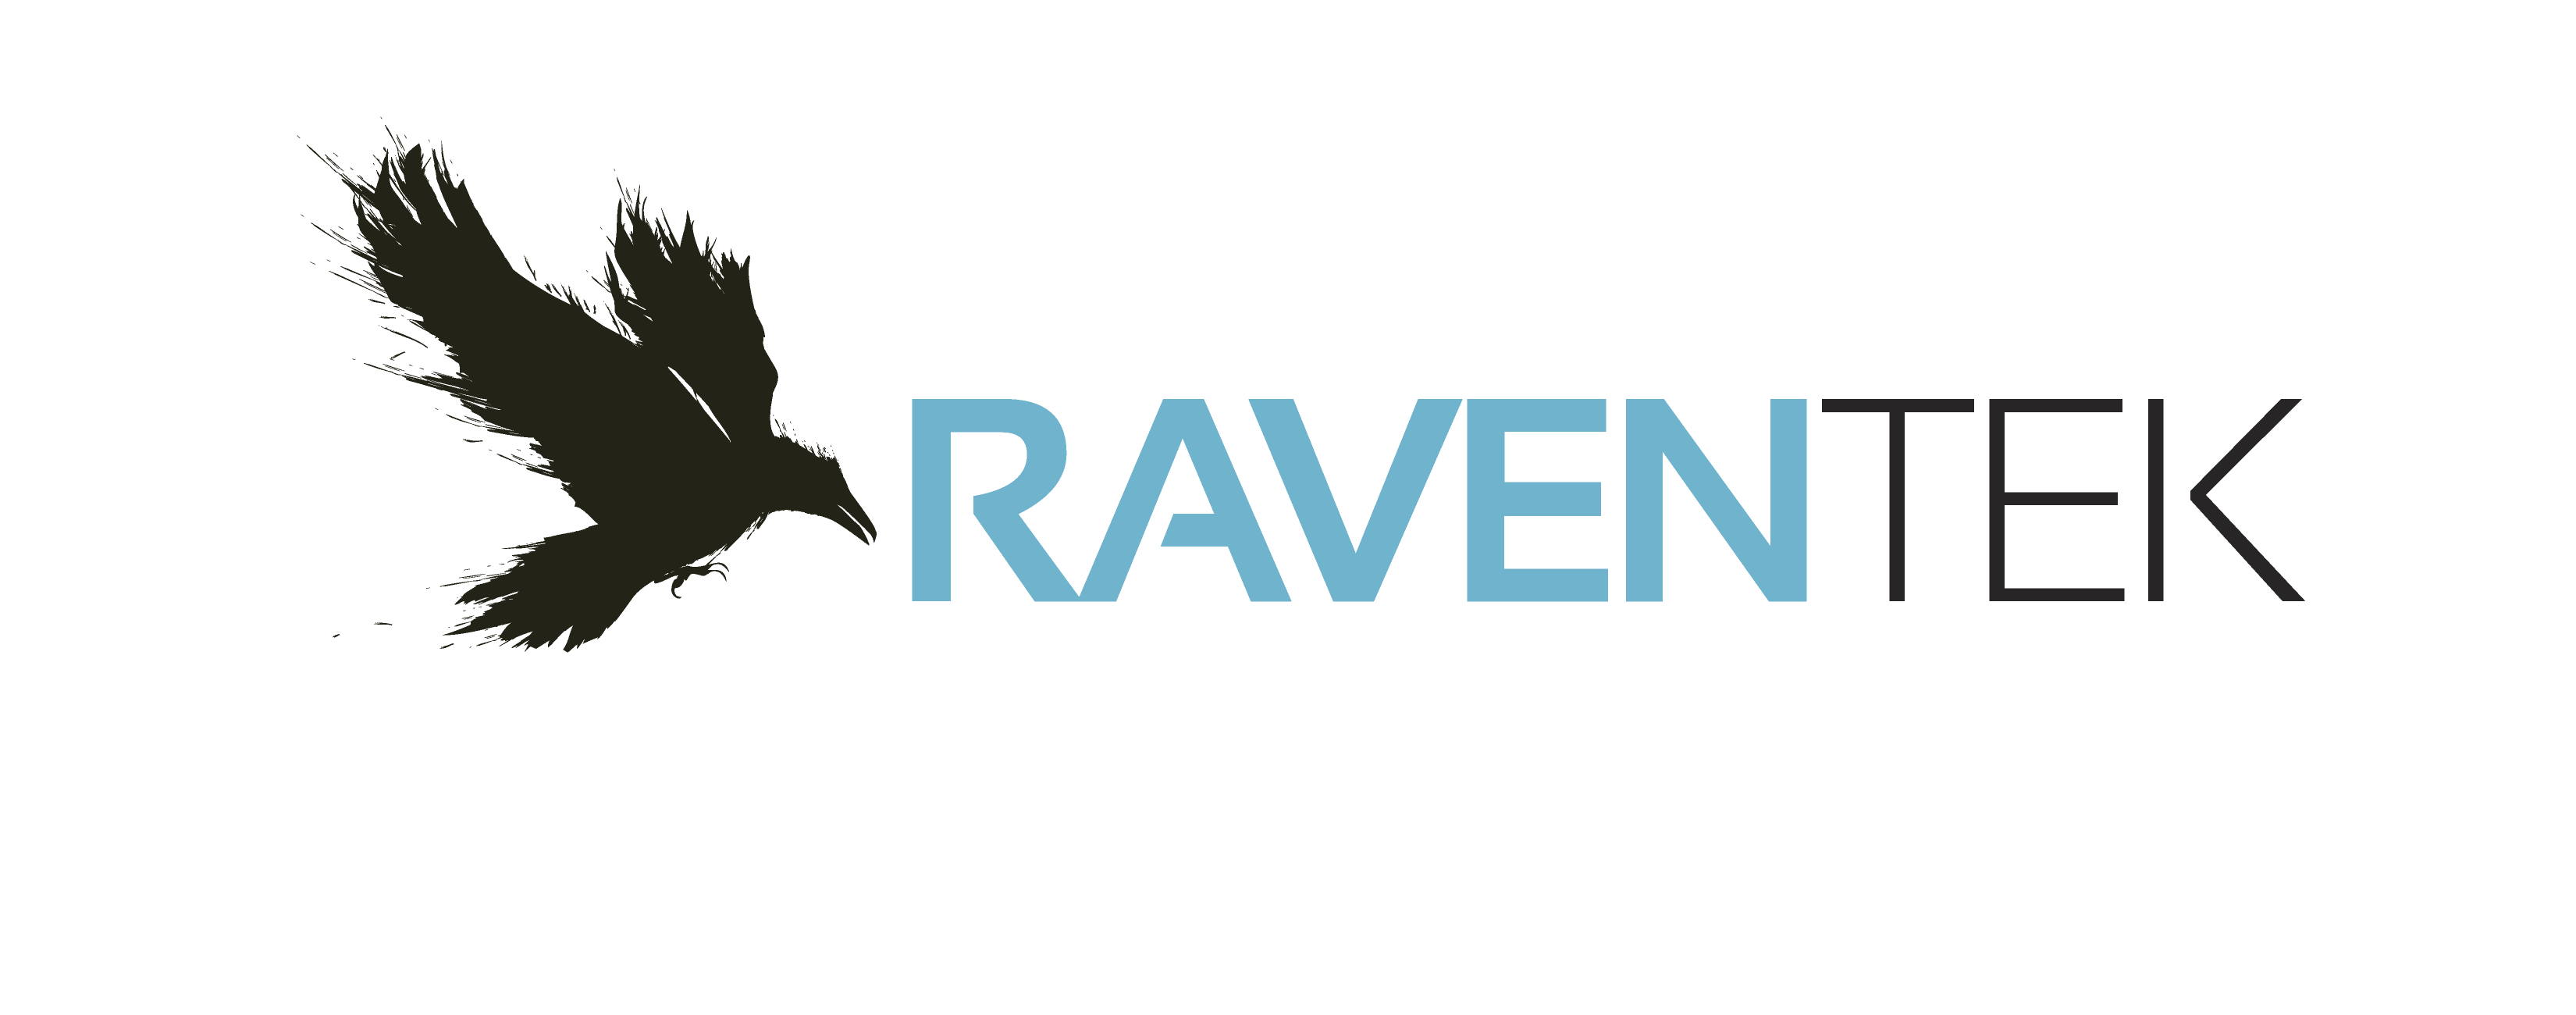 RavenTek Companies logo